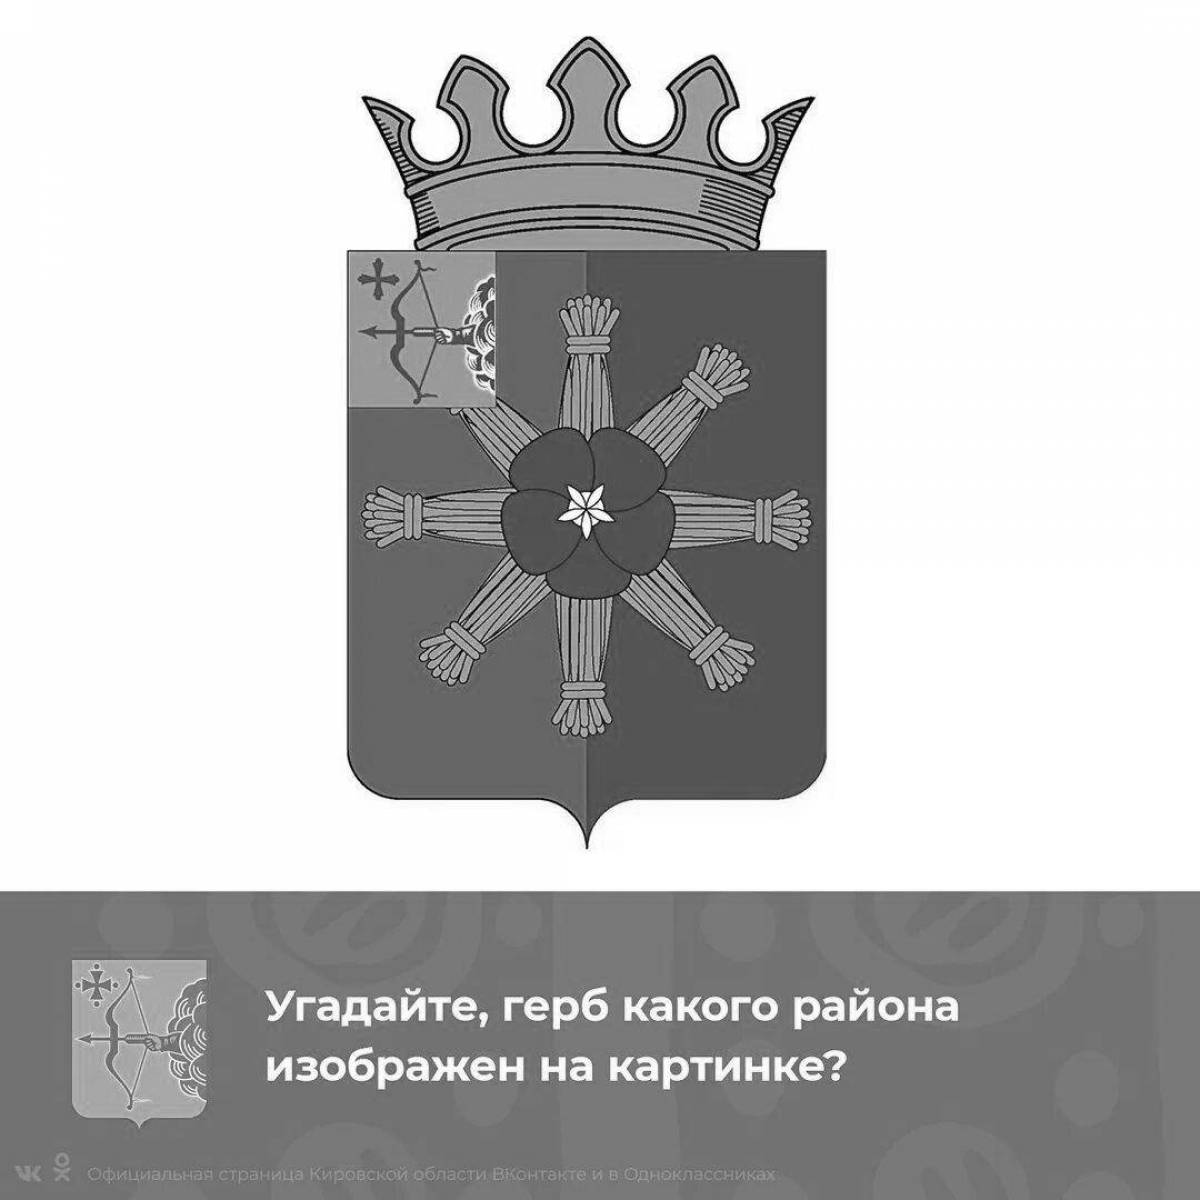 Богатый герб кировской области